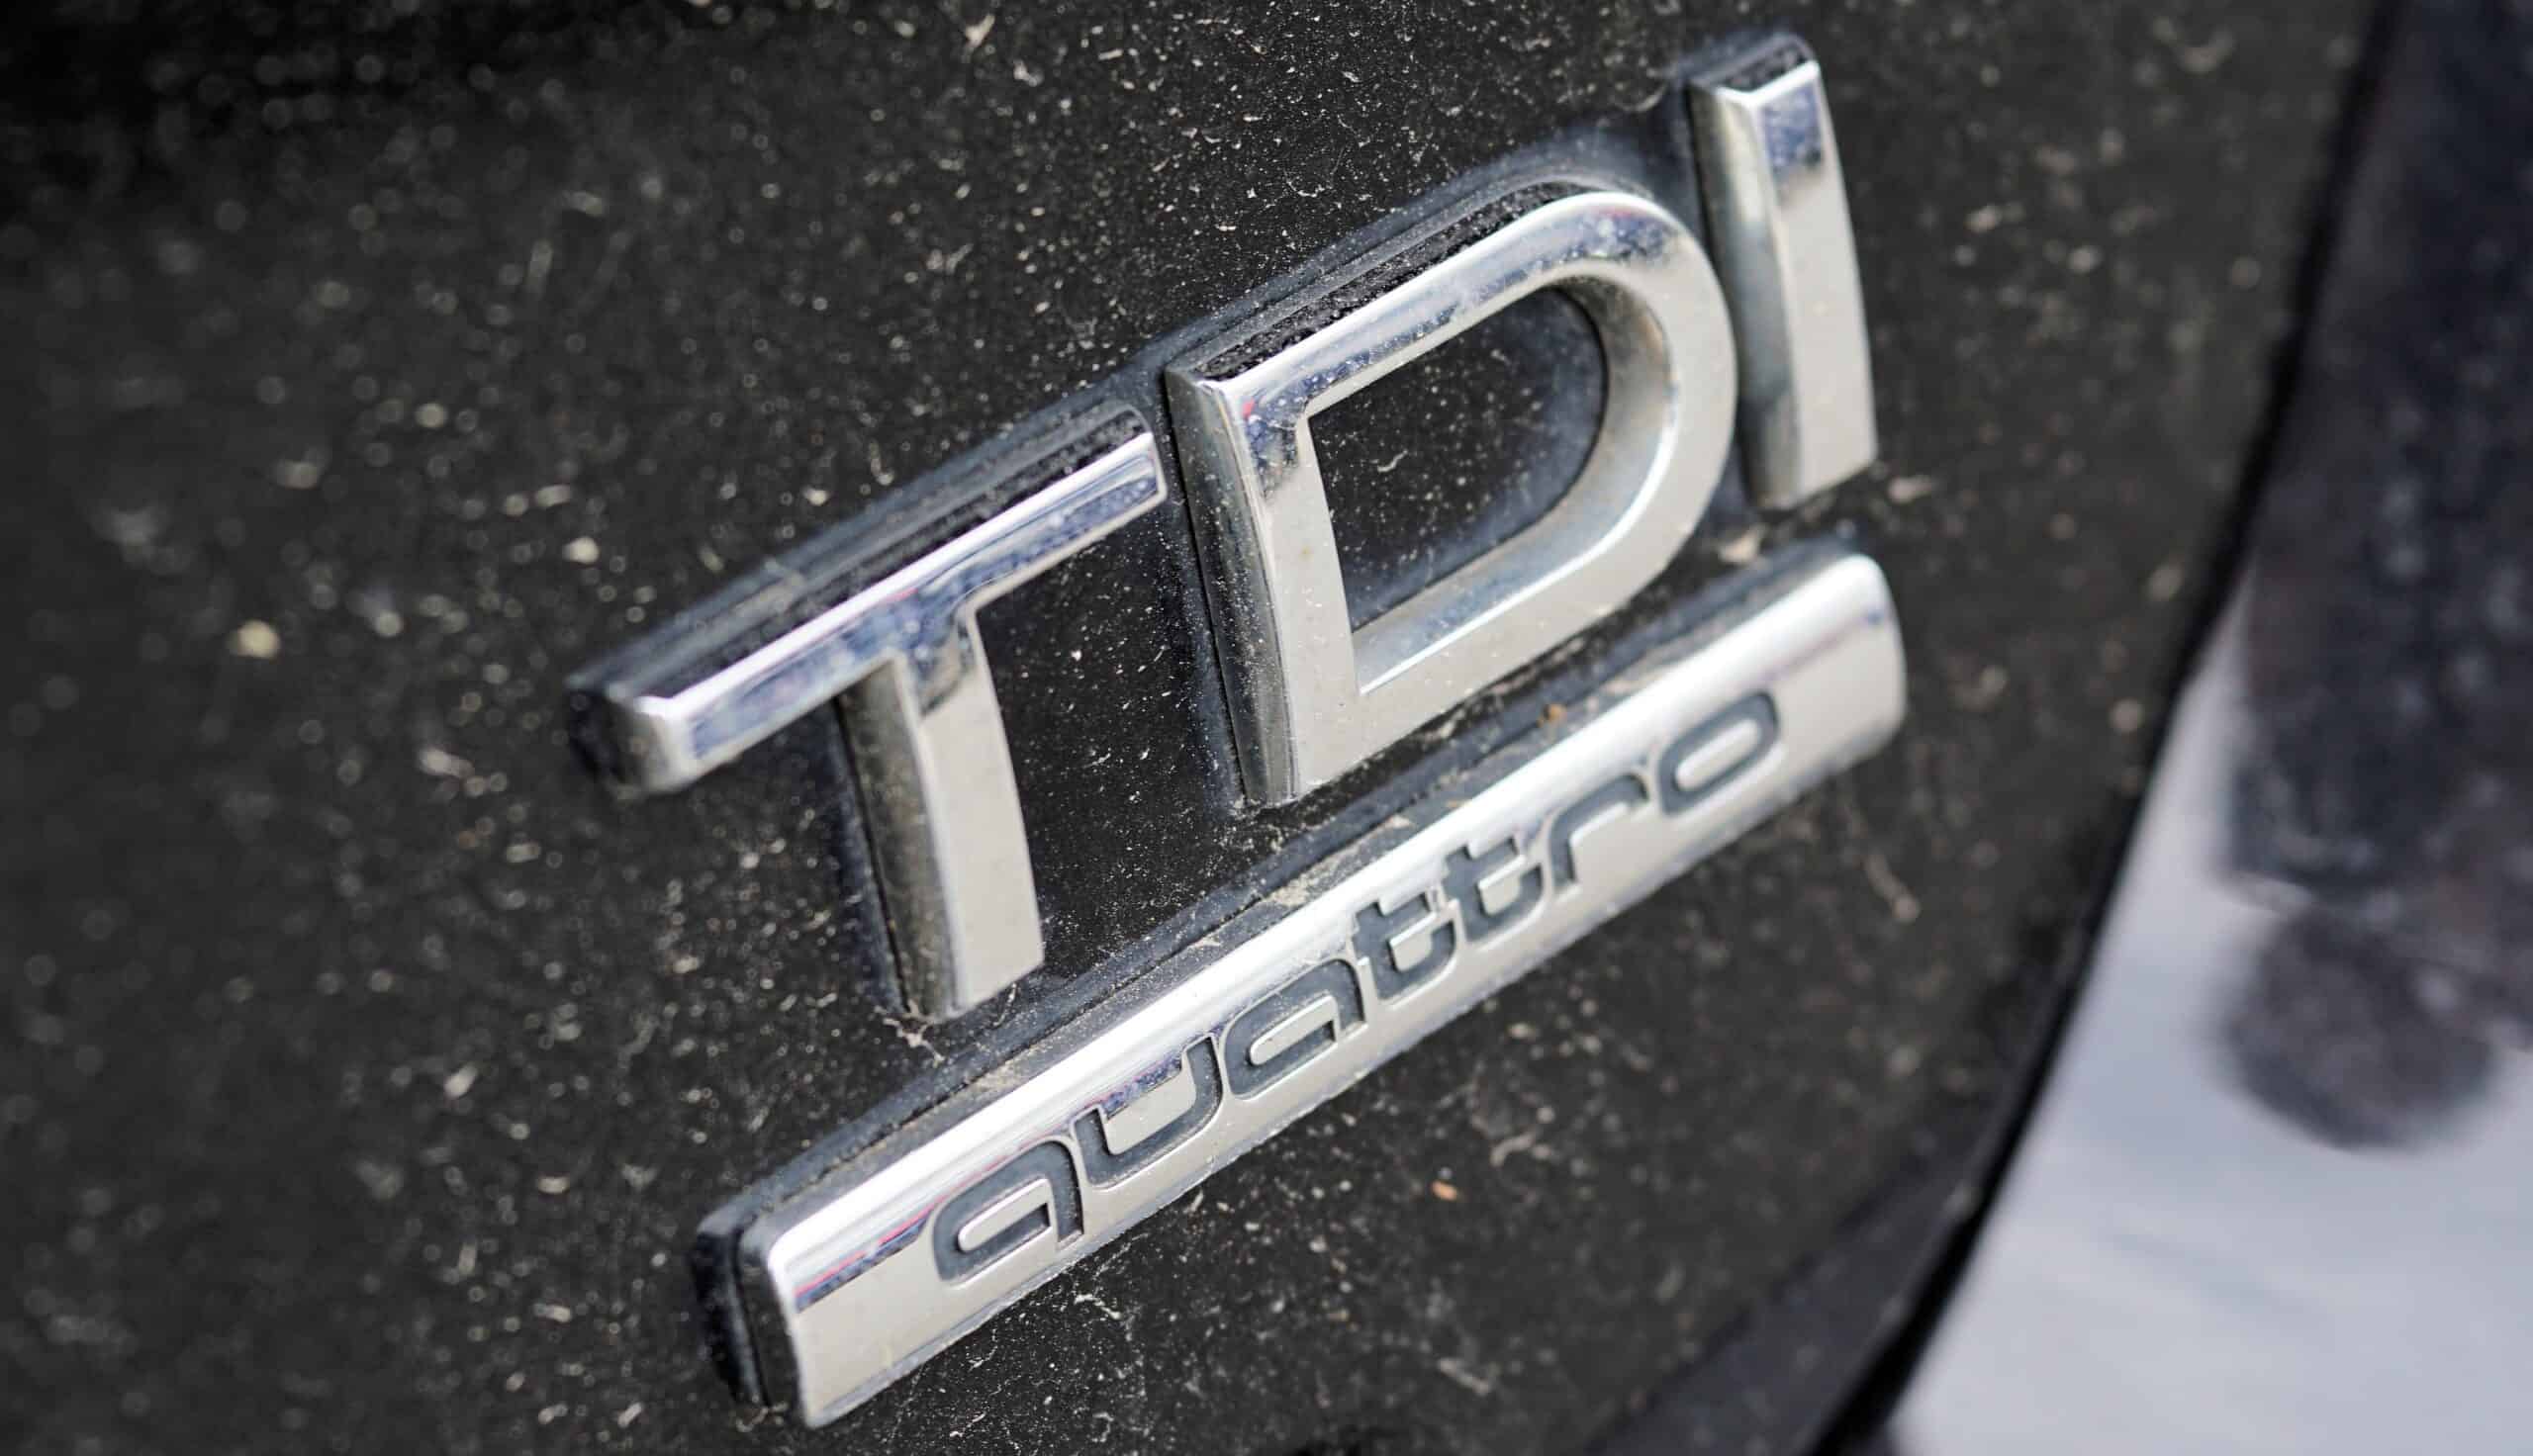 TDI, dieselgate, VW